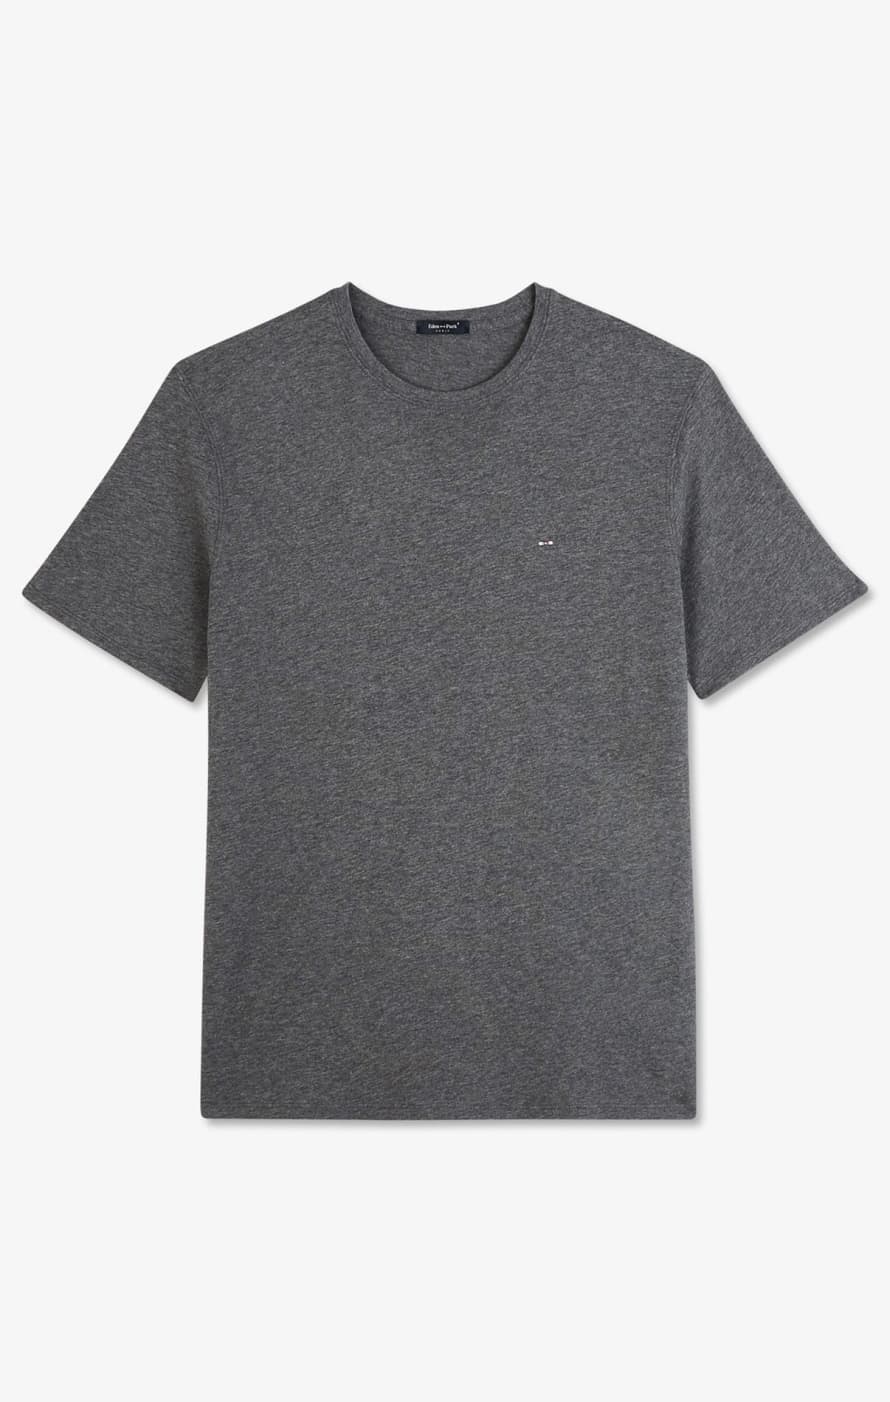 Eden Park Grey Cotton Pima T Shirt 